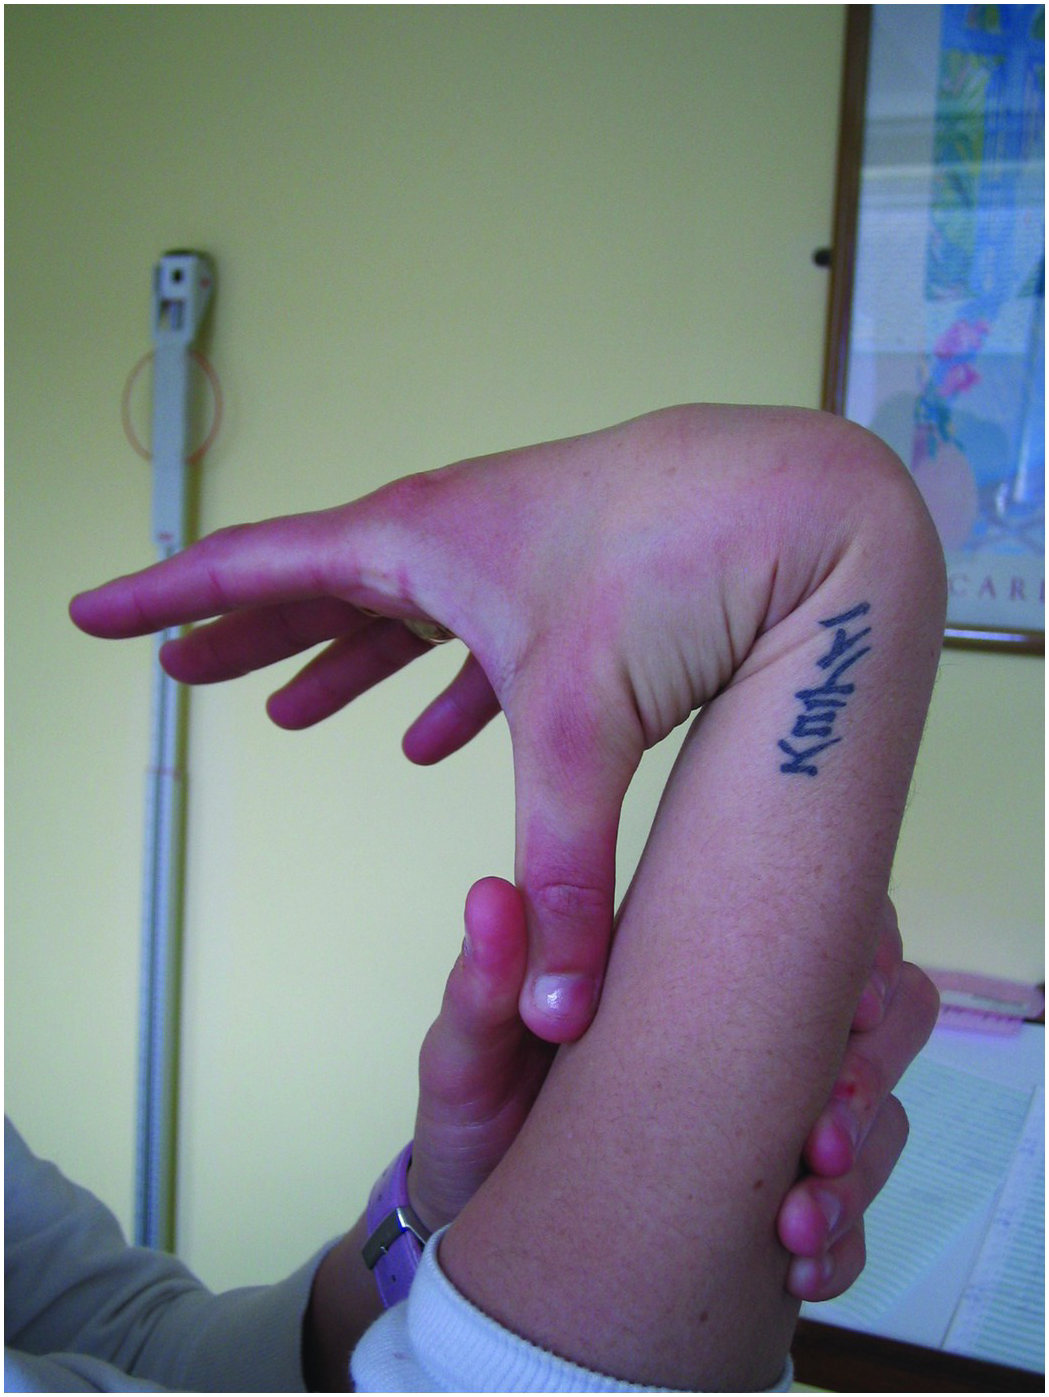 Thumb Splint Brace, Multi Finger Universal Thumb Stabilizer Blue For Skier  For Toe Nerve Sheaths Left Hand 